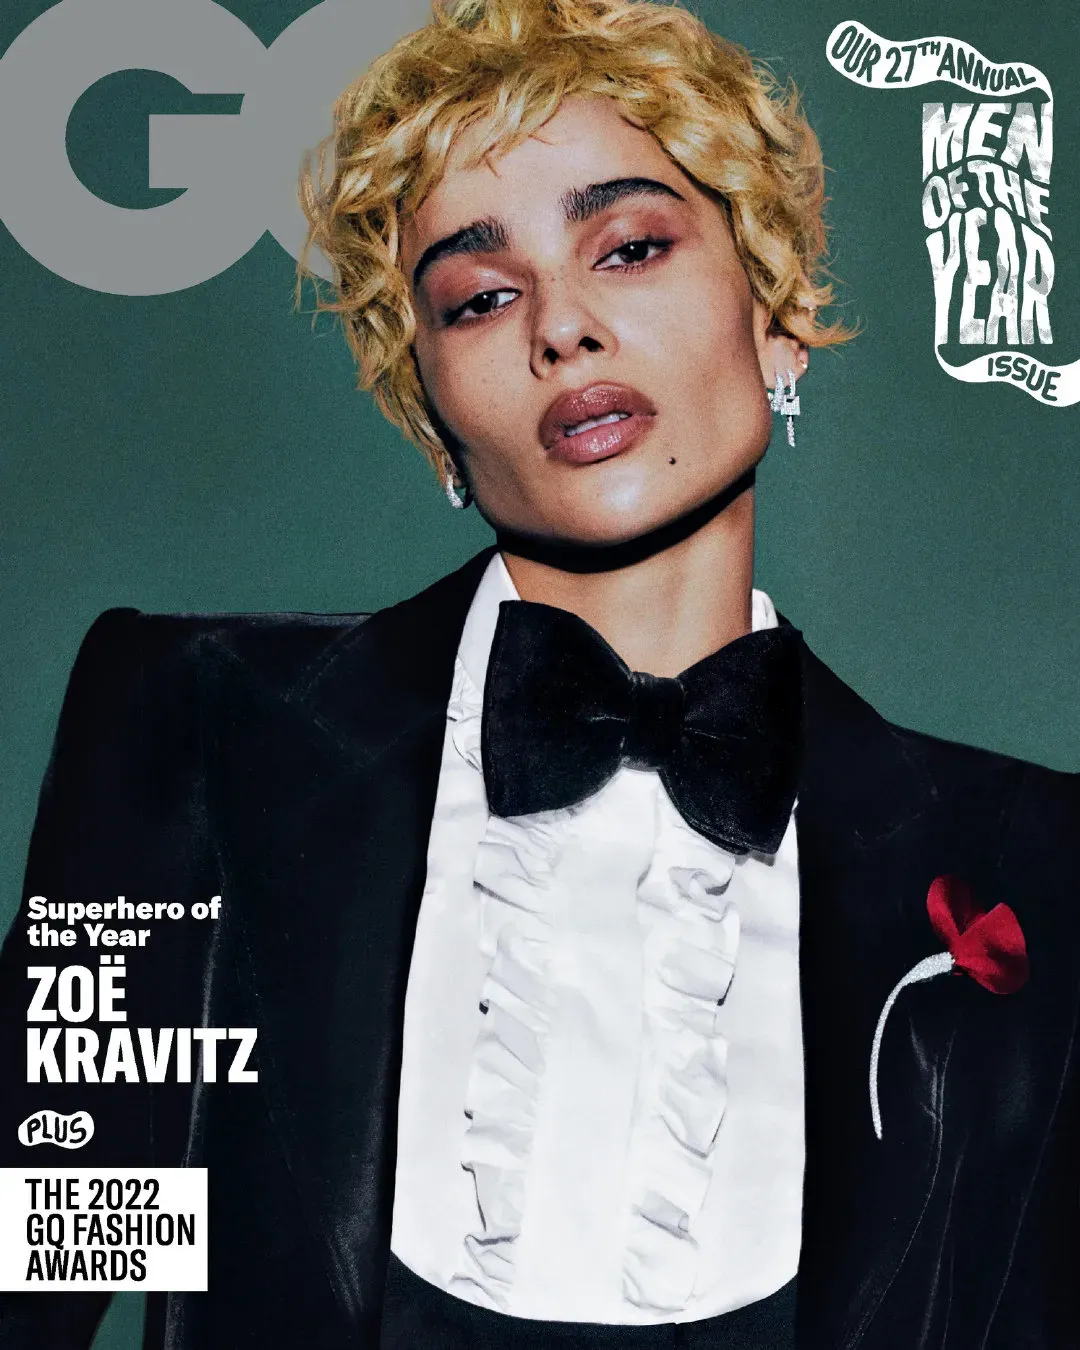 Zoë Kravitz, new photo for 'GQ' magazine | FMV6